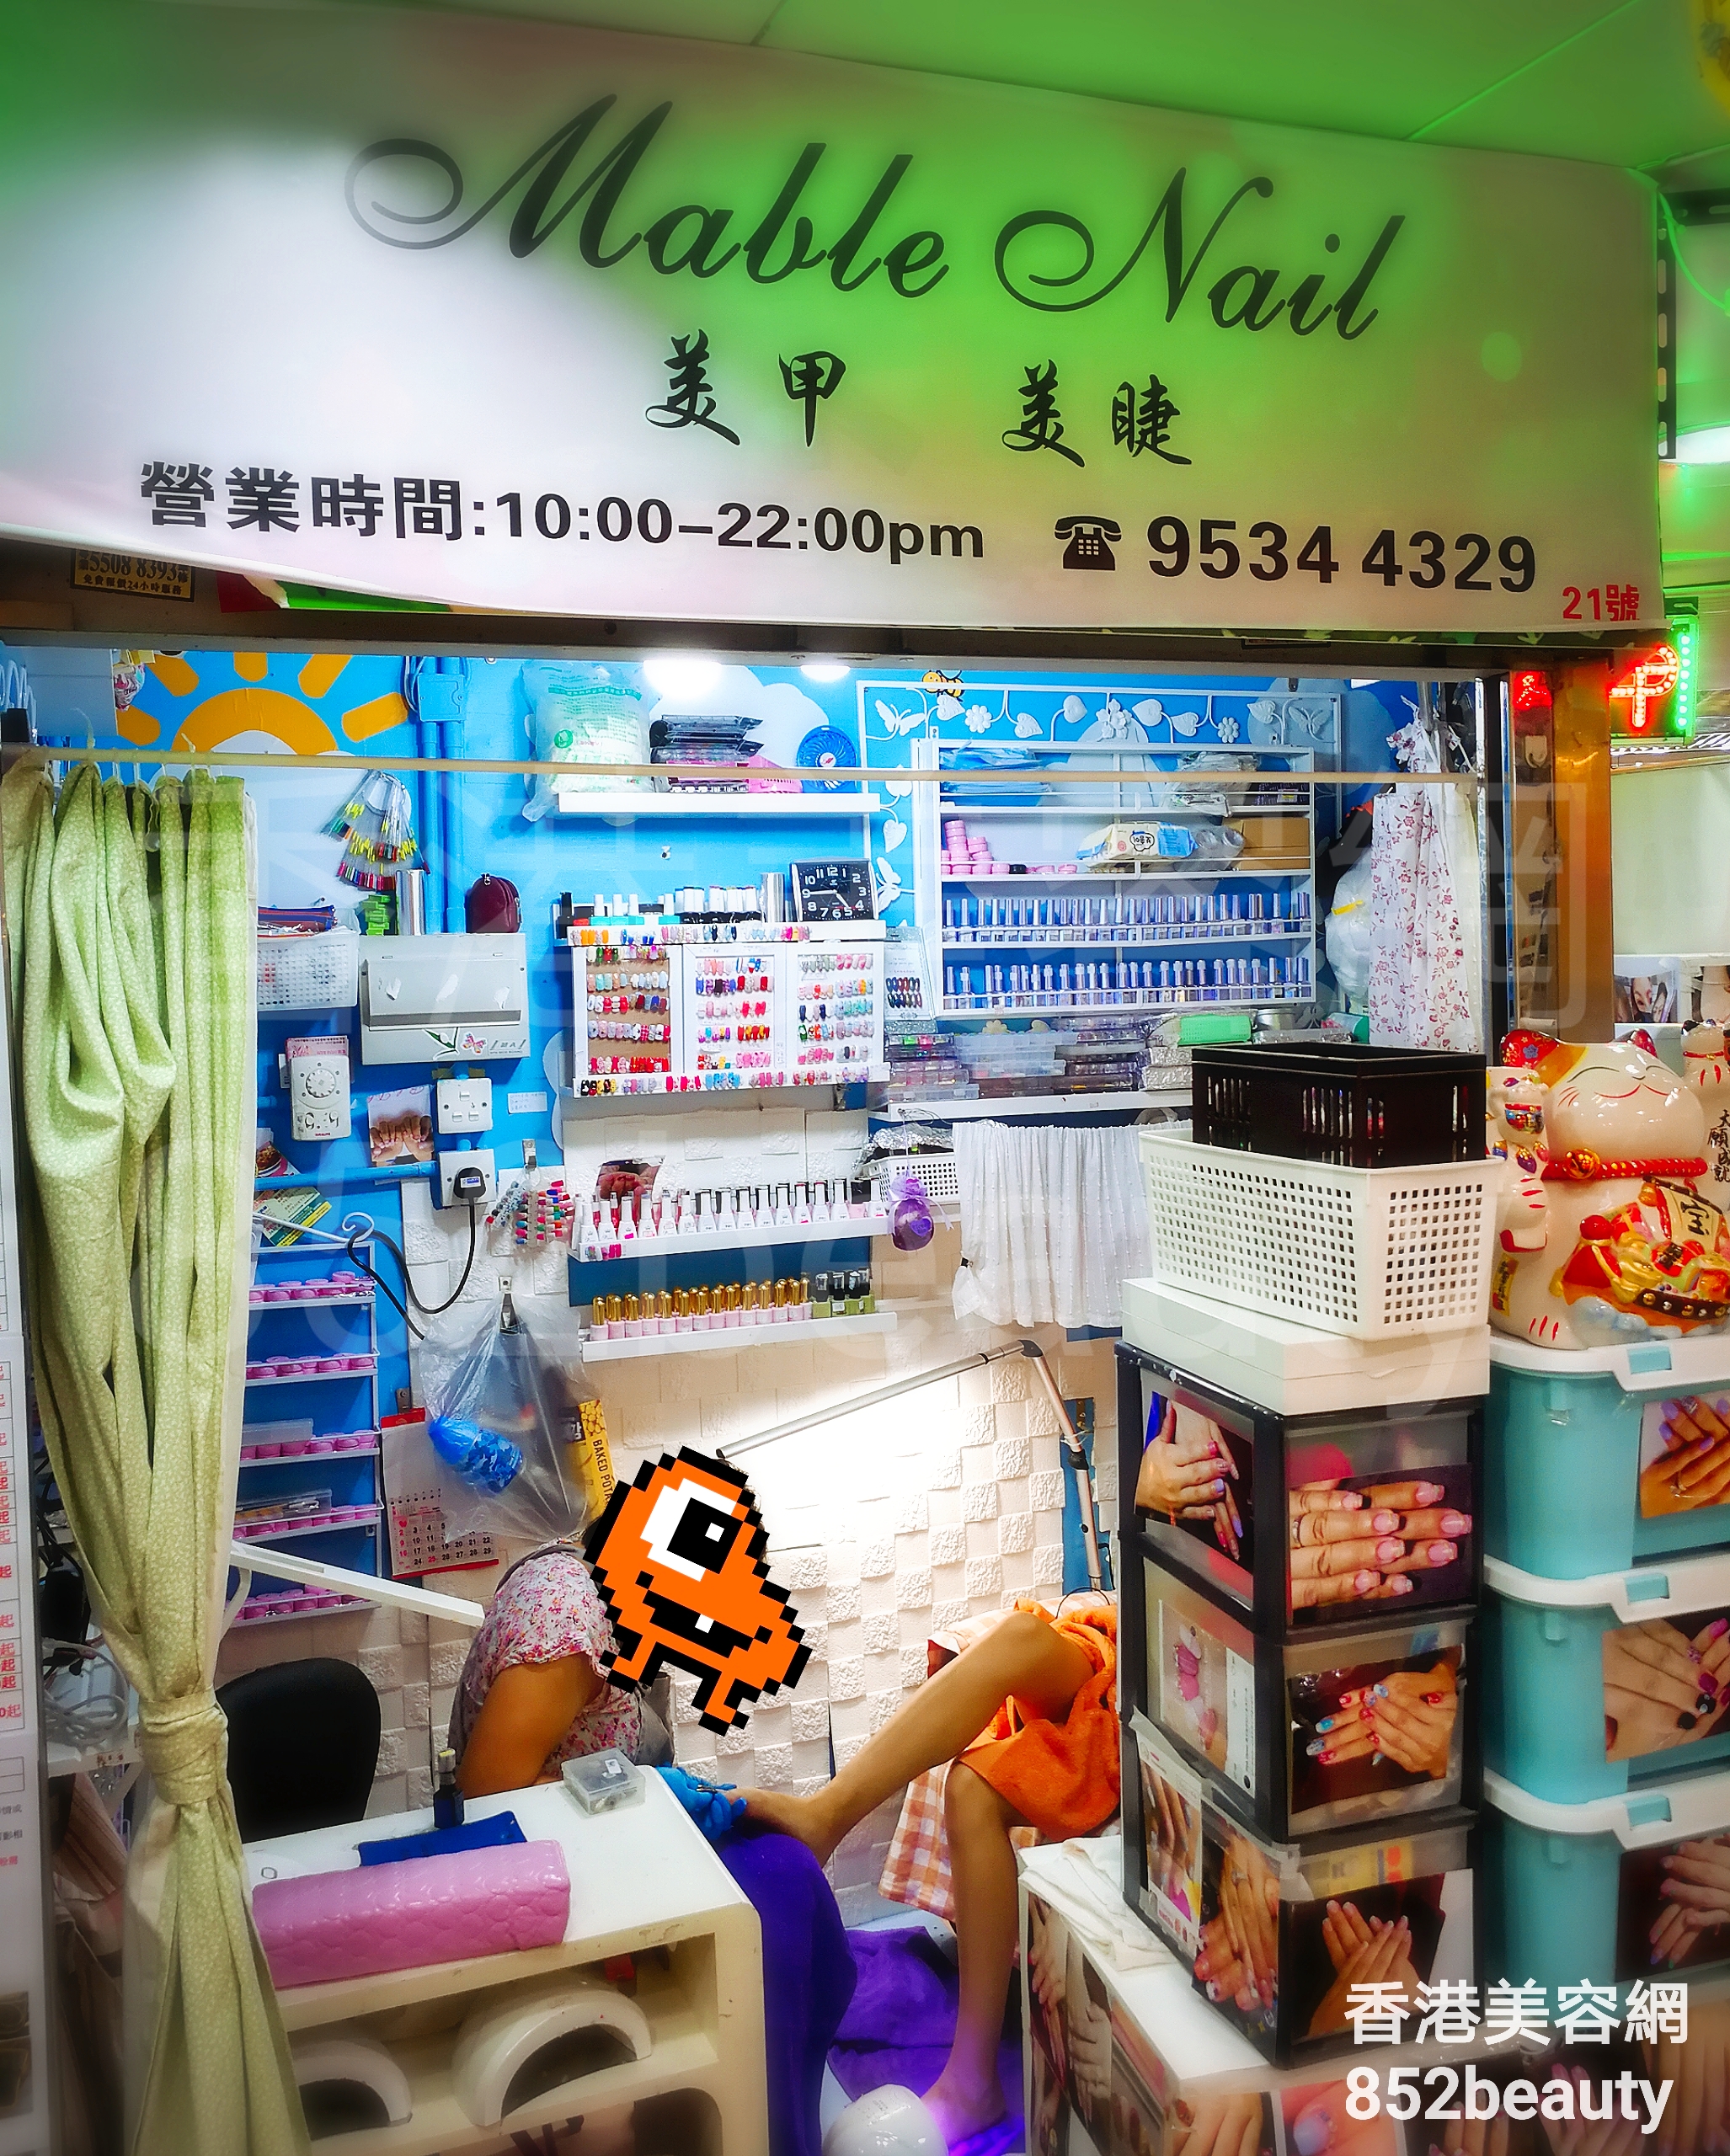 美容院 Beauty Salon: Mable Nail